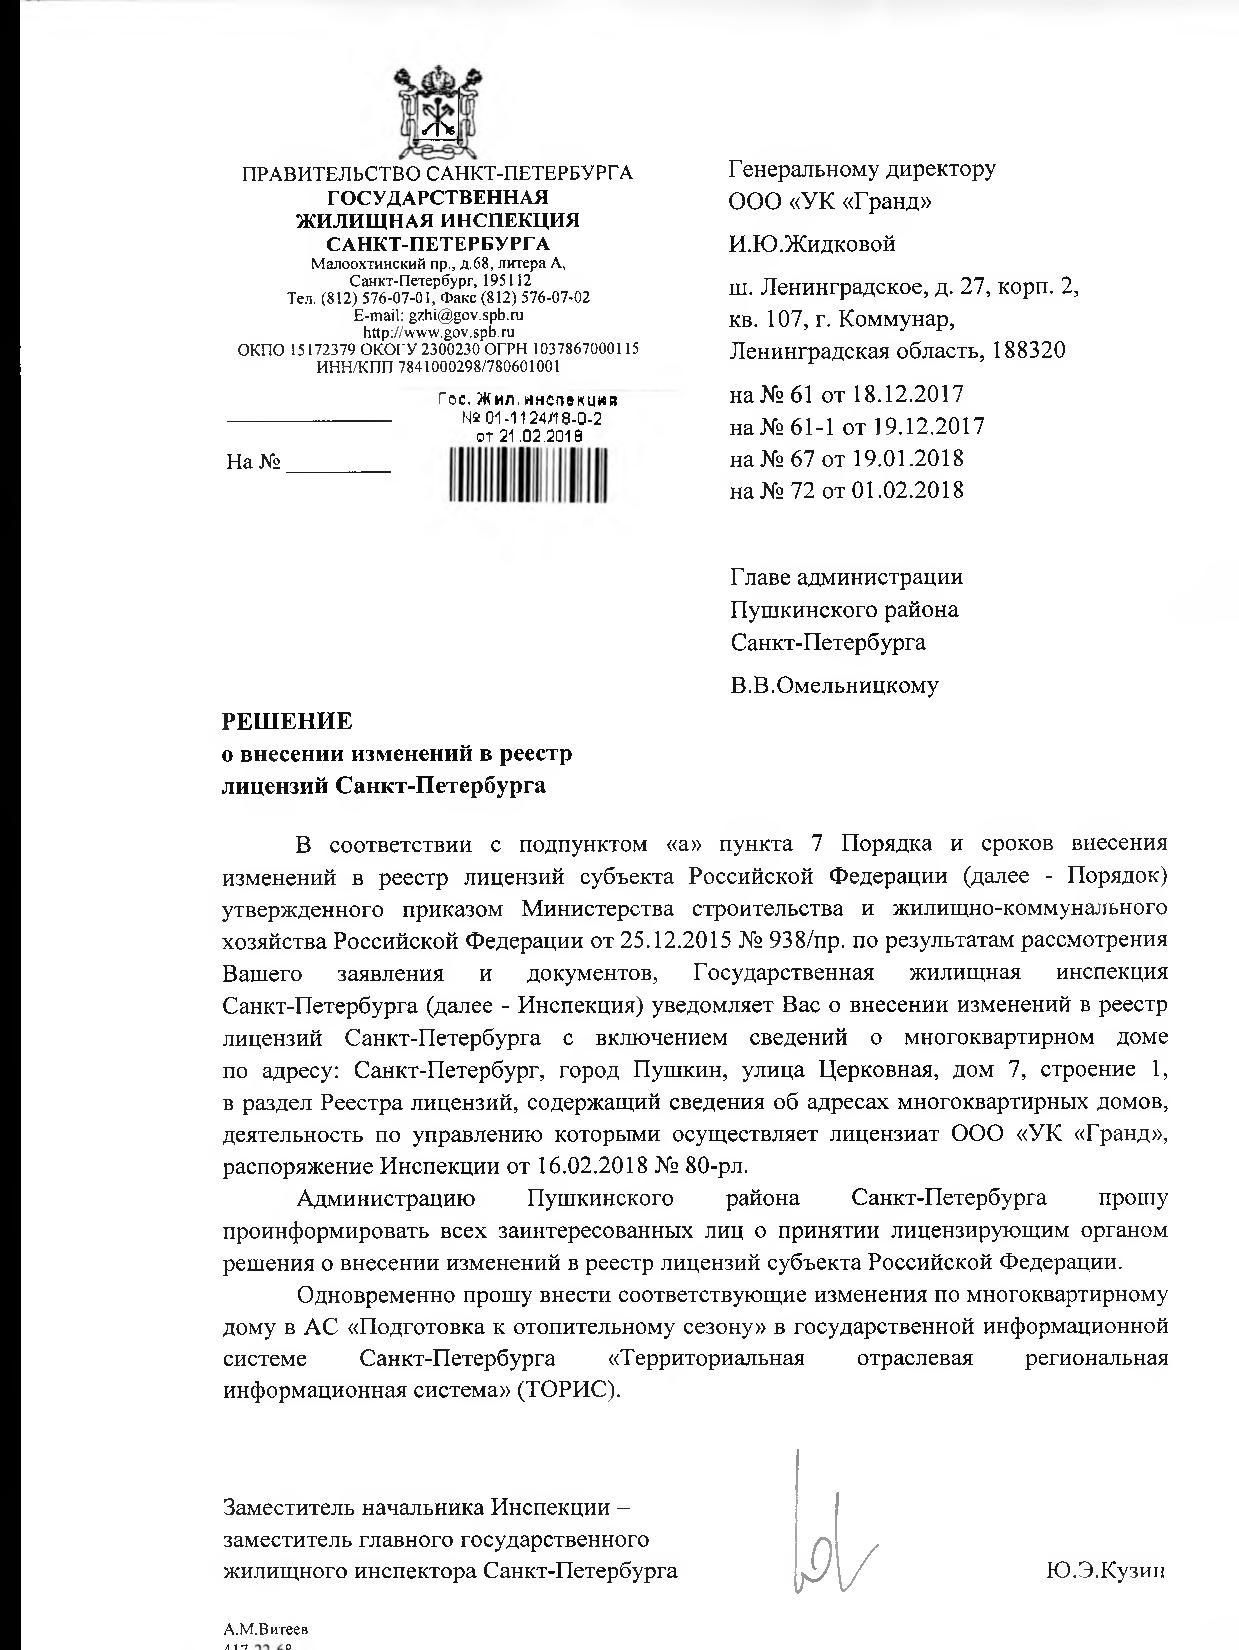 Распоряжение о внесении в лицензию МКД по адресу: г.Пушкин, ул.Церковная, д.7